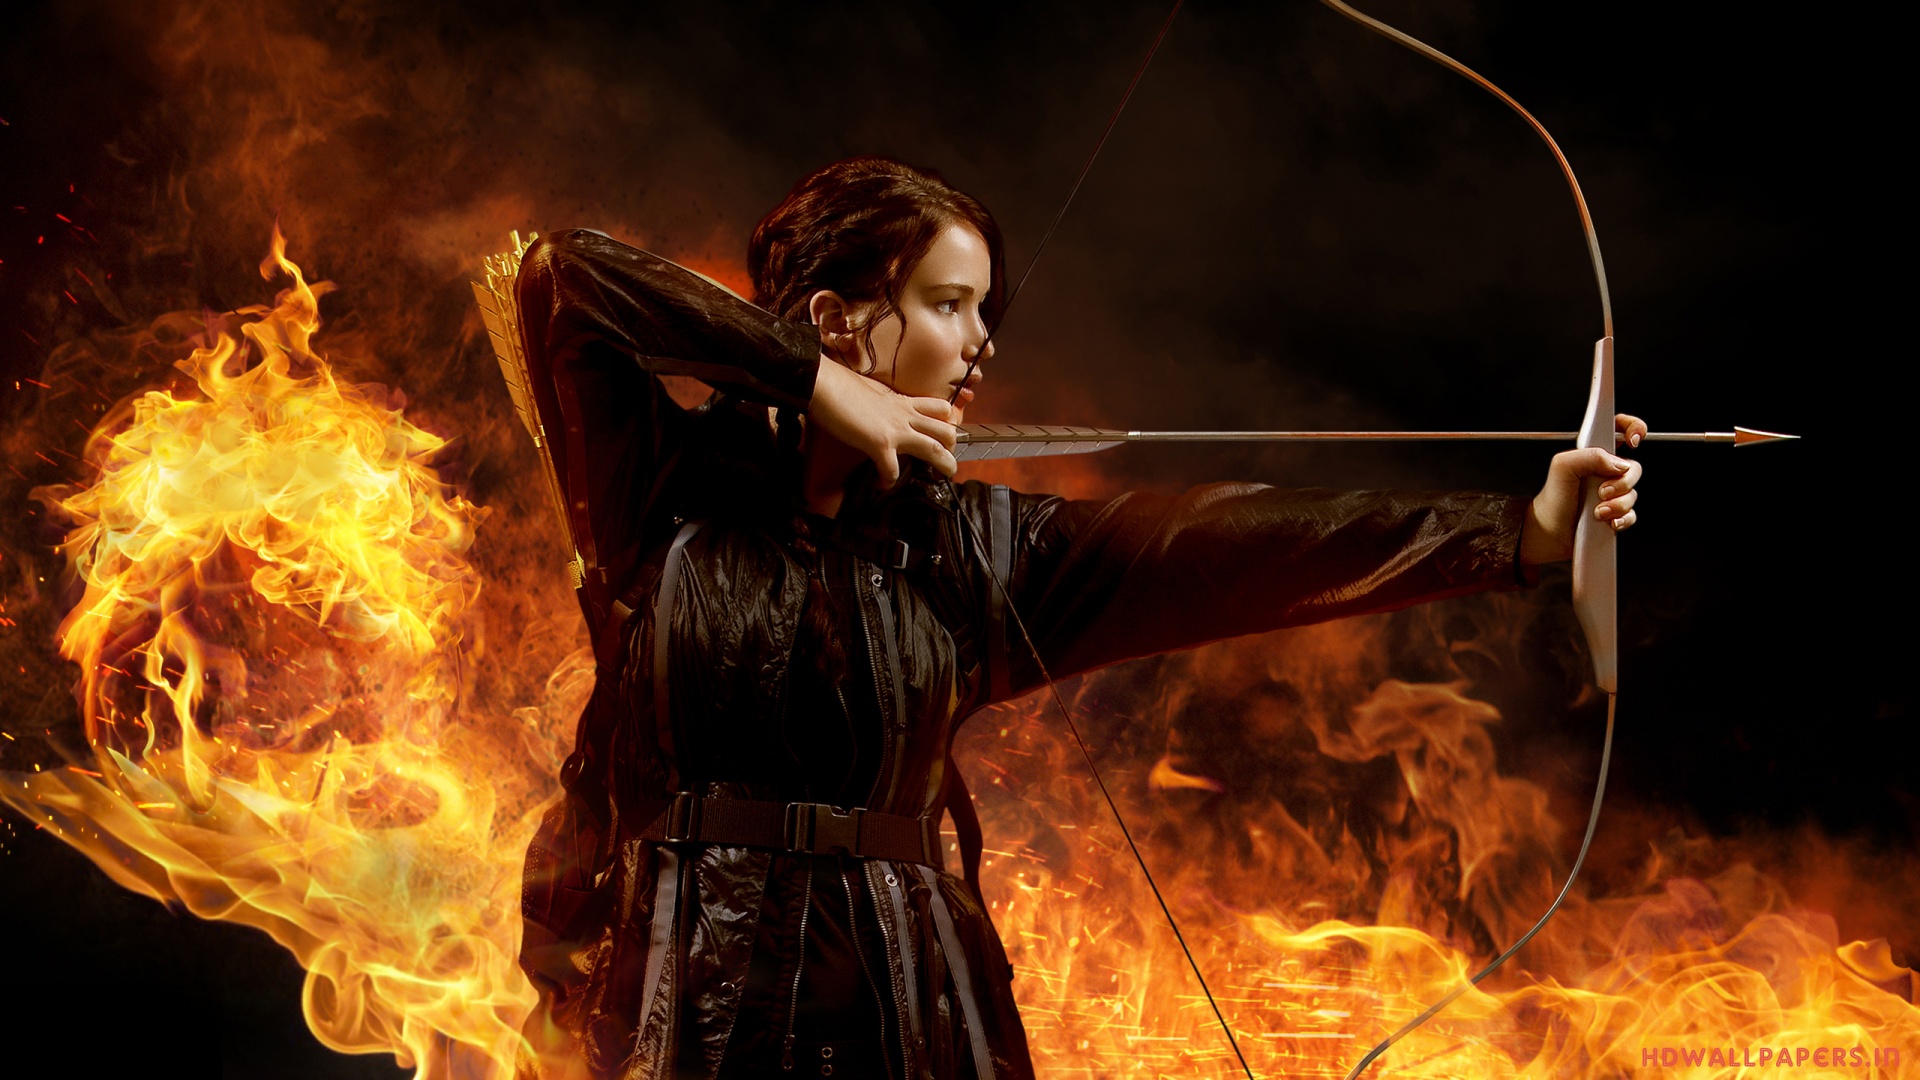 Hunger Games Wallpaper Hd - HD Wallpaper 